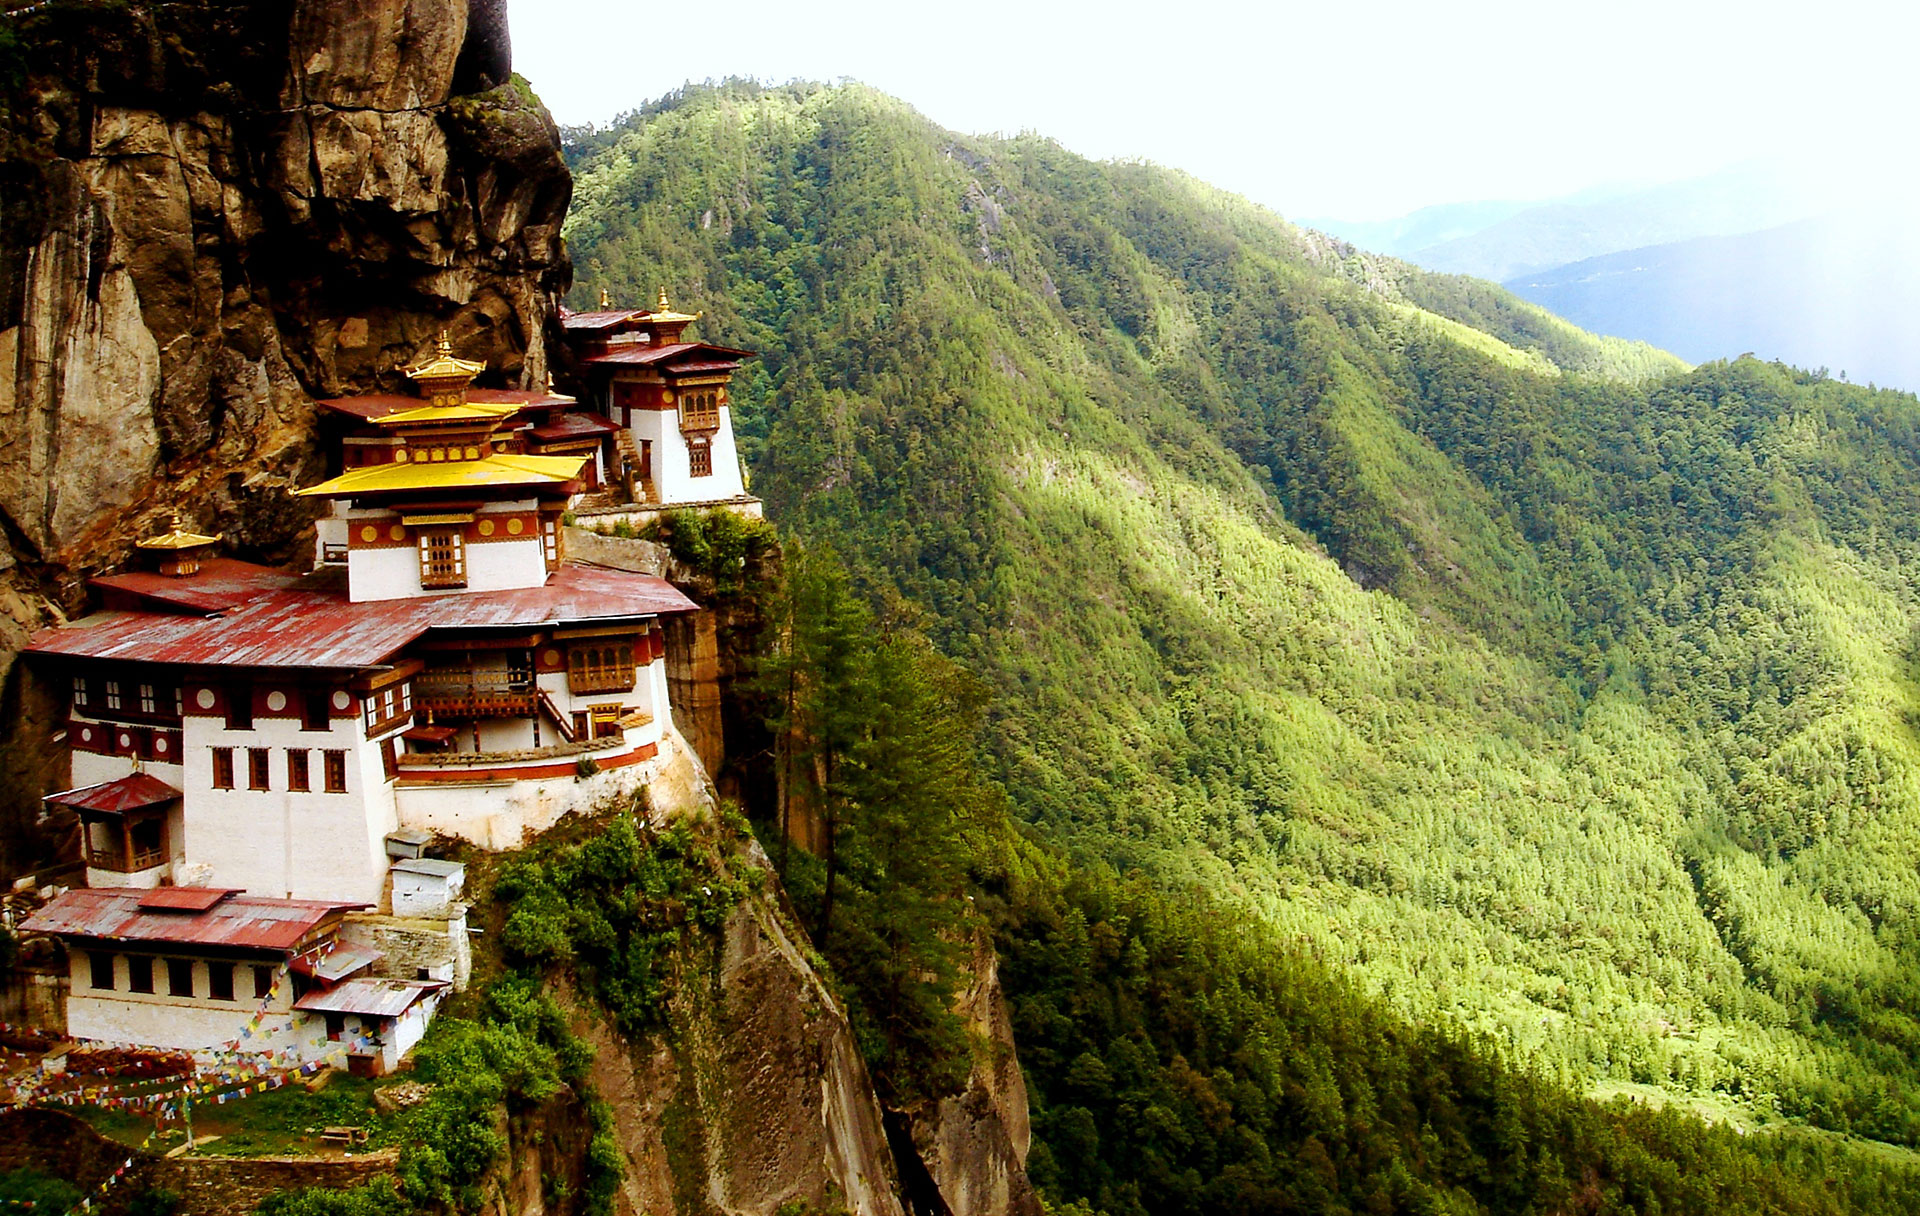 Tiger's nest monastery